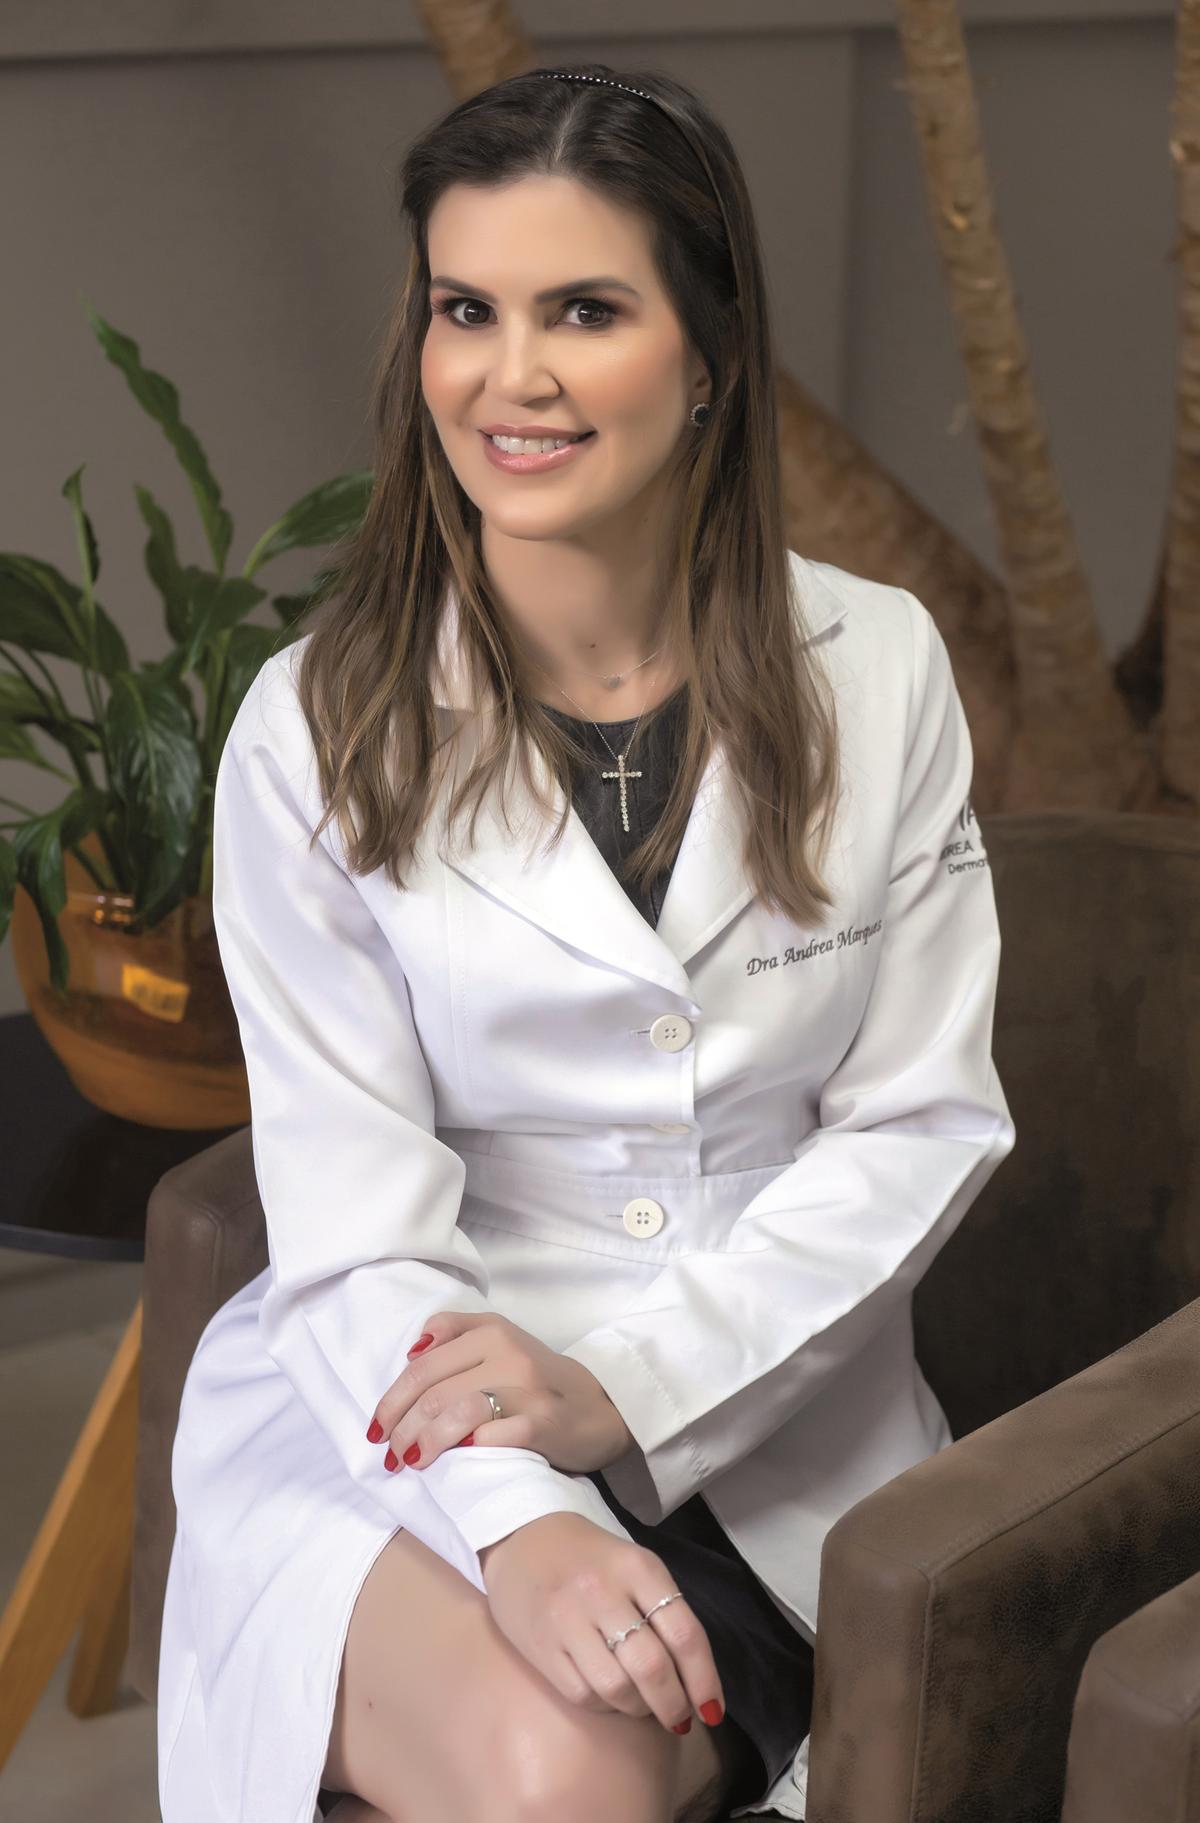 Dra. Andrea Marques é uma dermatologista destacada, especializada em gerenciamento do envelhecimento e estética avançada. Membro titular da SBD e da SBCD, sua clínica oferece tratamentos abrangentes, incluindo procedimentos clínicos, cirúrgicos e estéticos. Equipada com tecnologia de ponta, como o EMSCULPT e o Ultraformer MPT, ela é pioneira na dermatologia estética